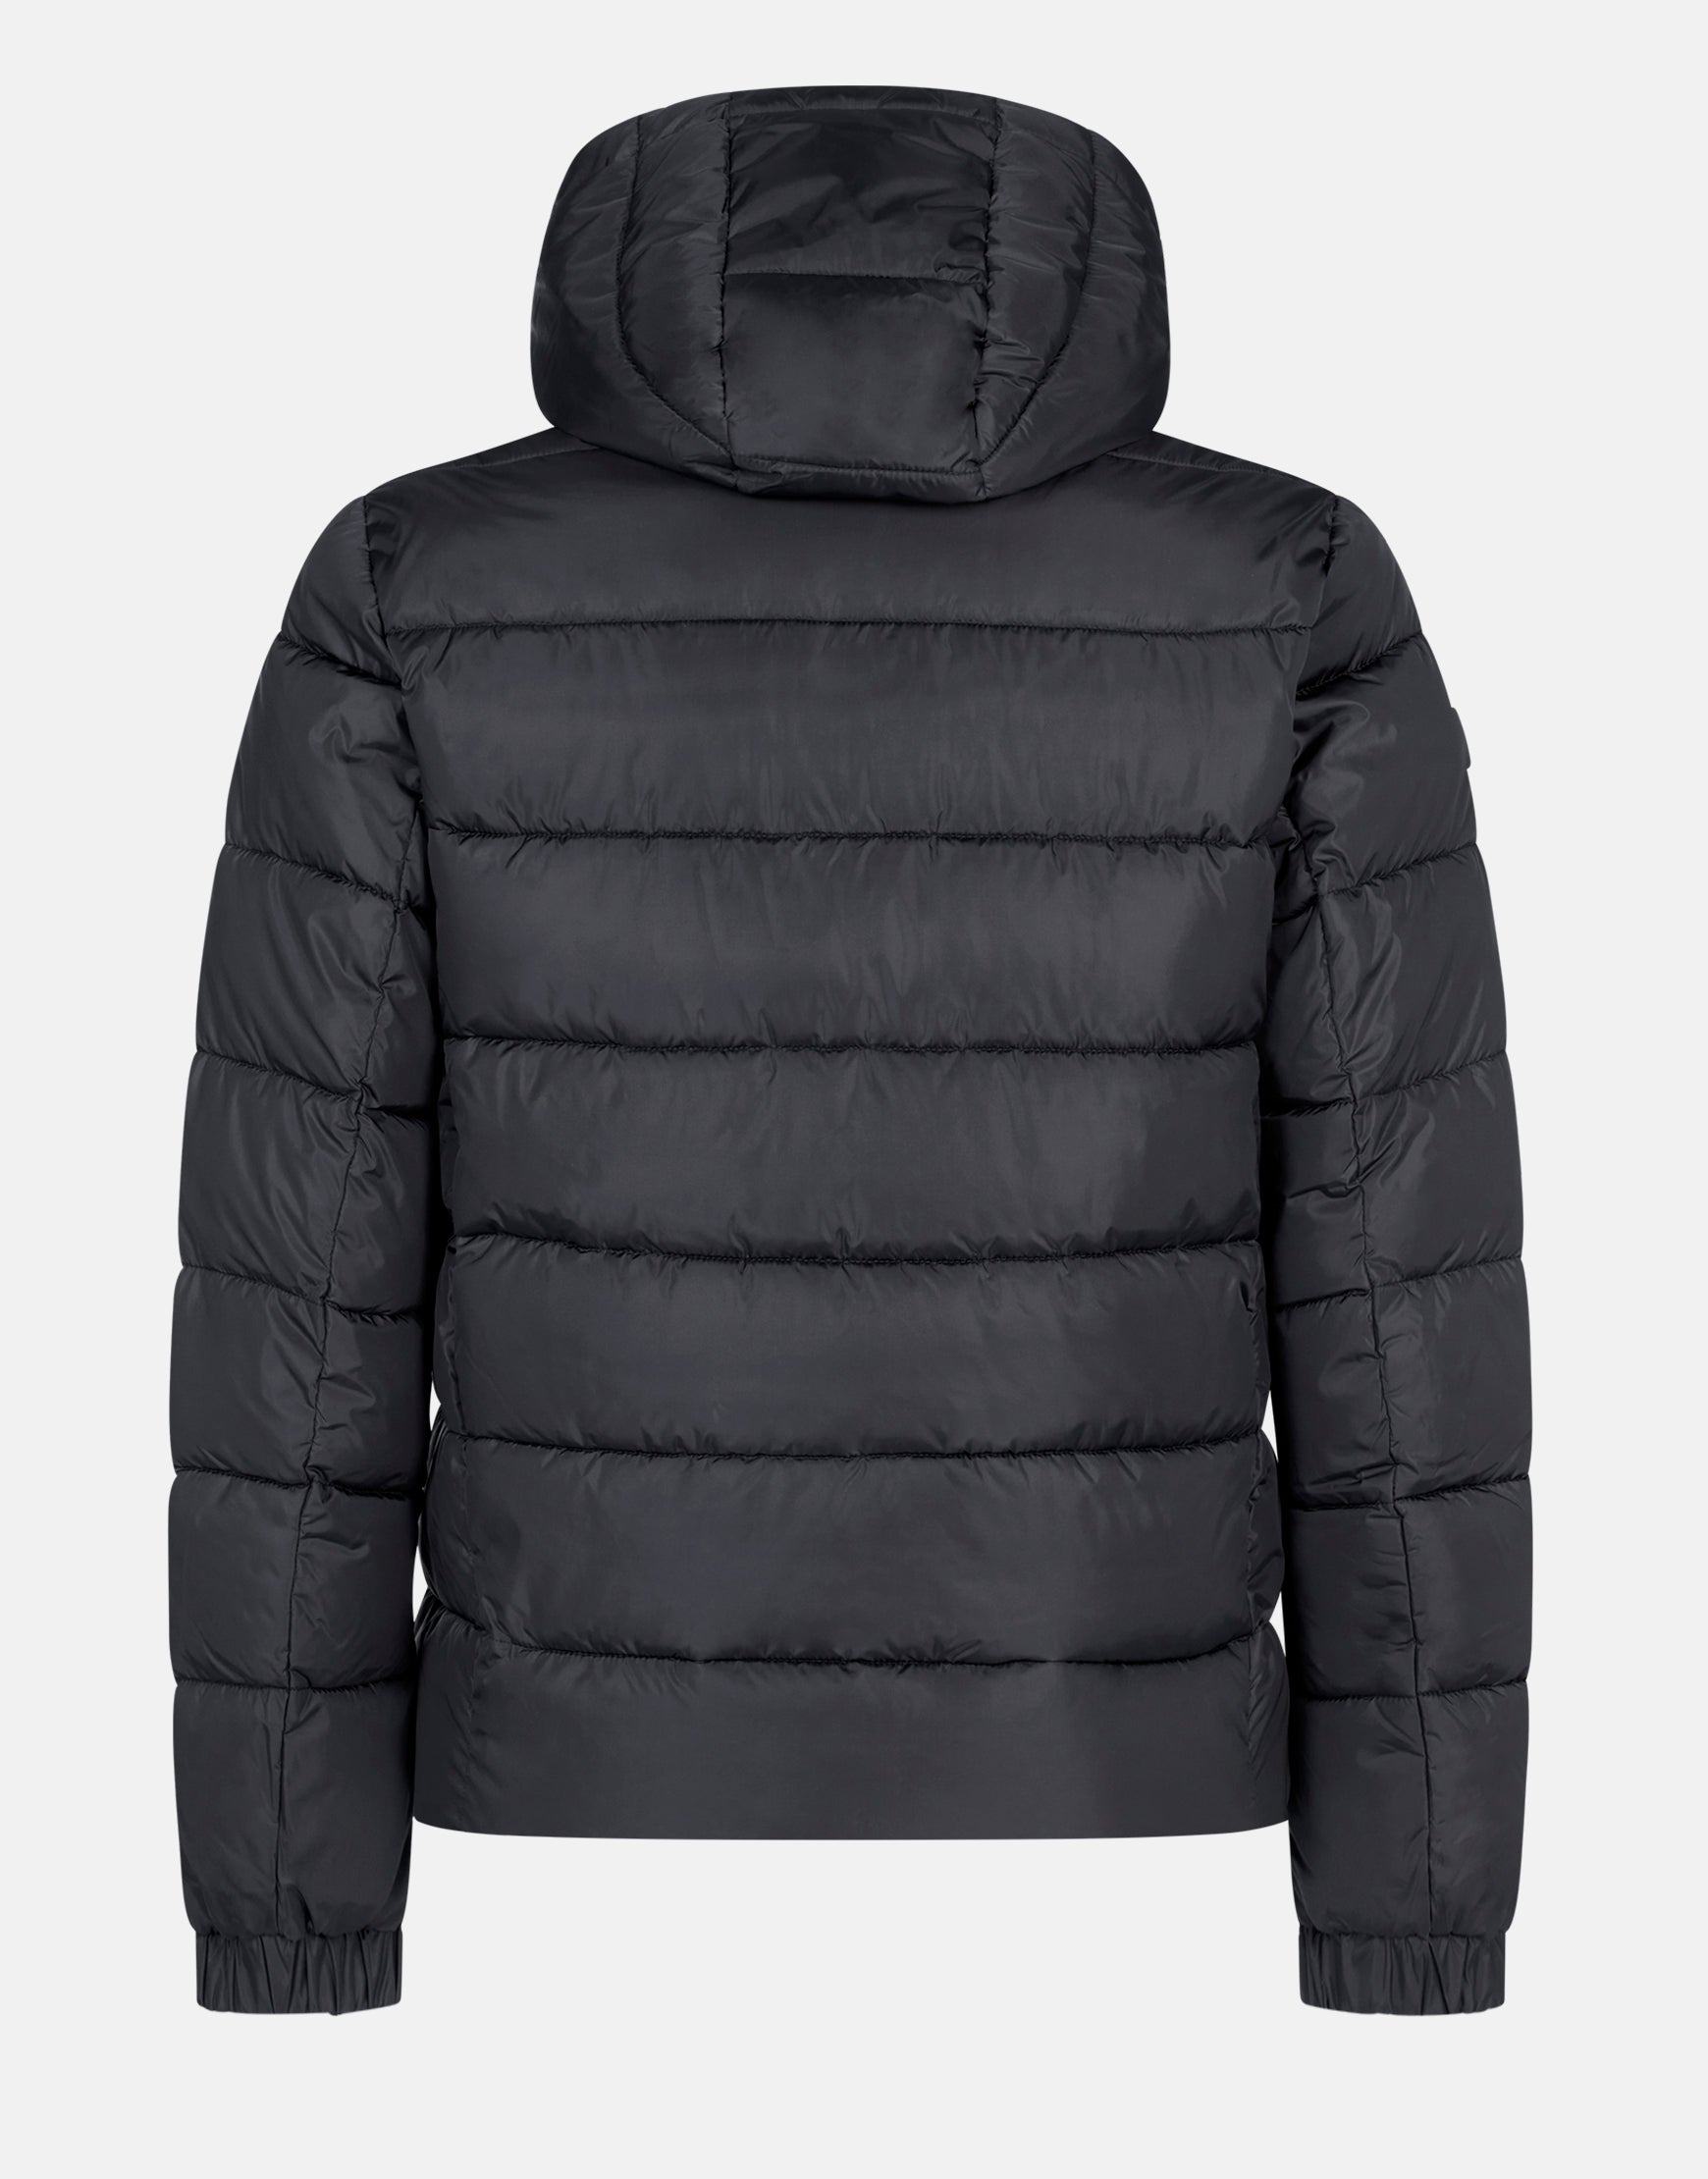 puffa jacket with hood